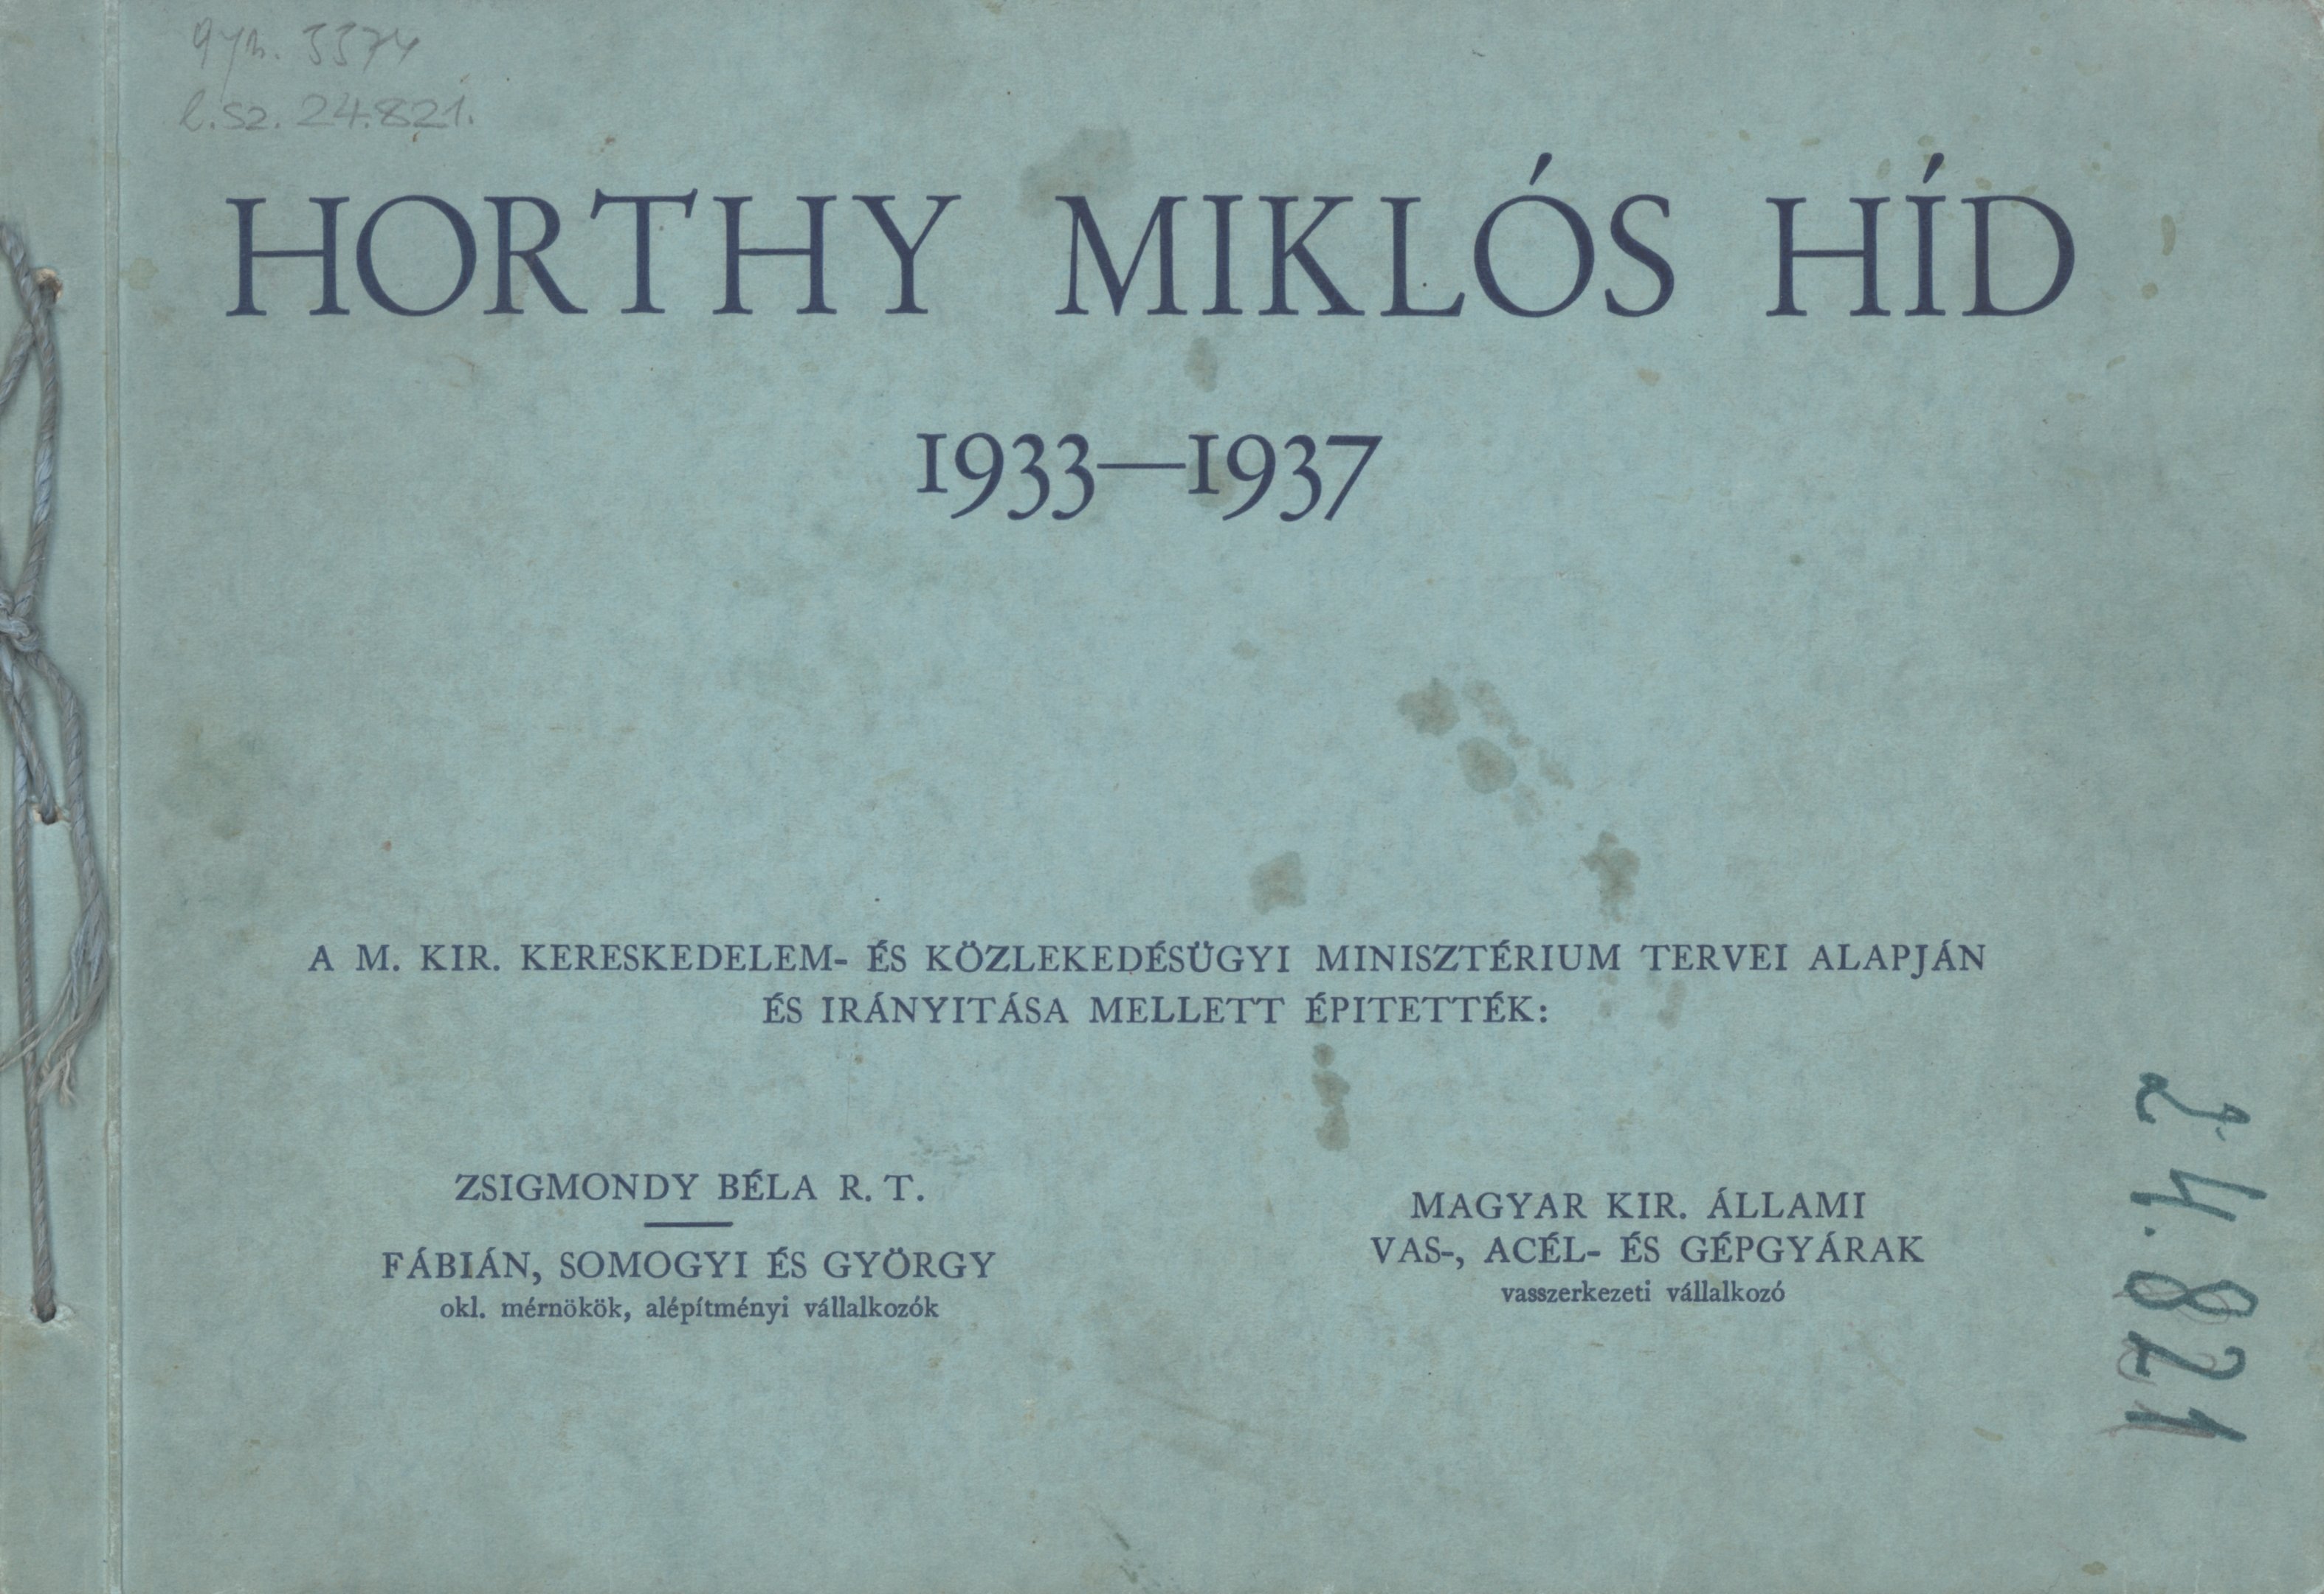 Horthy Miklós híd 1933-1937 (Magyar Környezetvédelmi és Vízügyi Múzeum - Duna Múzeum CC BY-NC-SA)